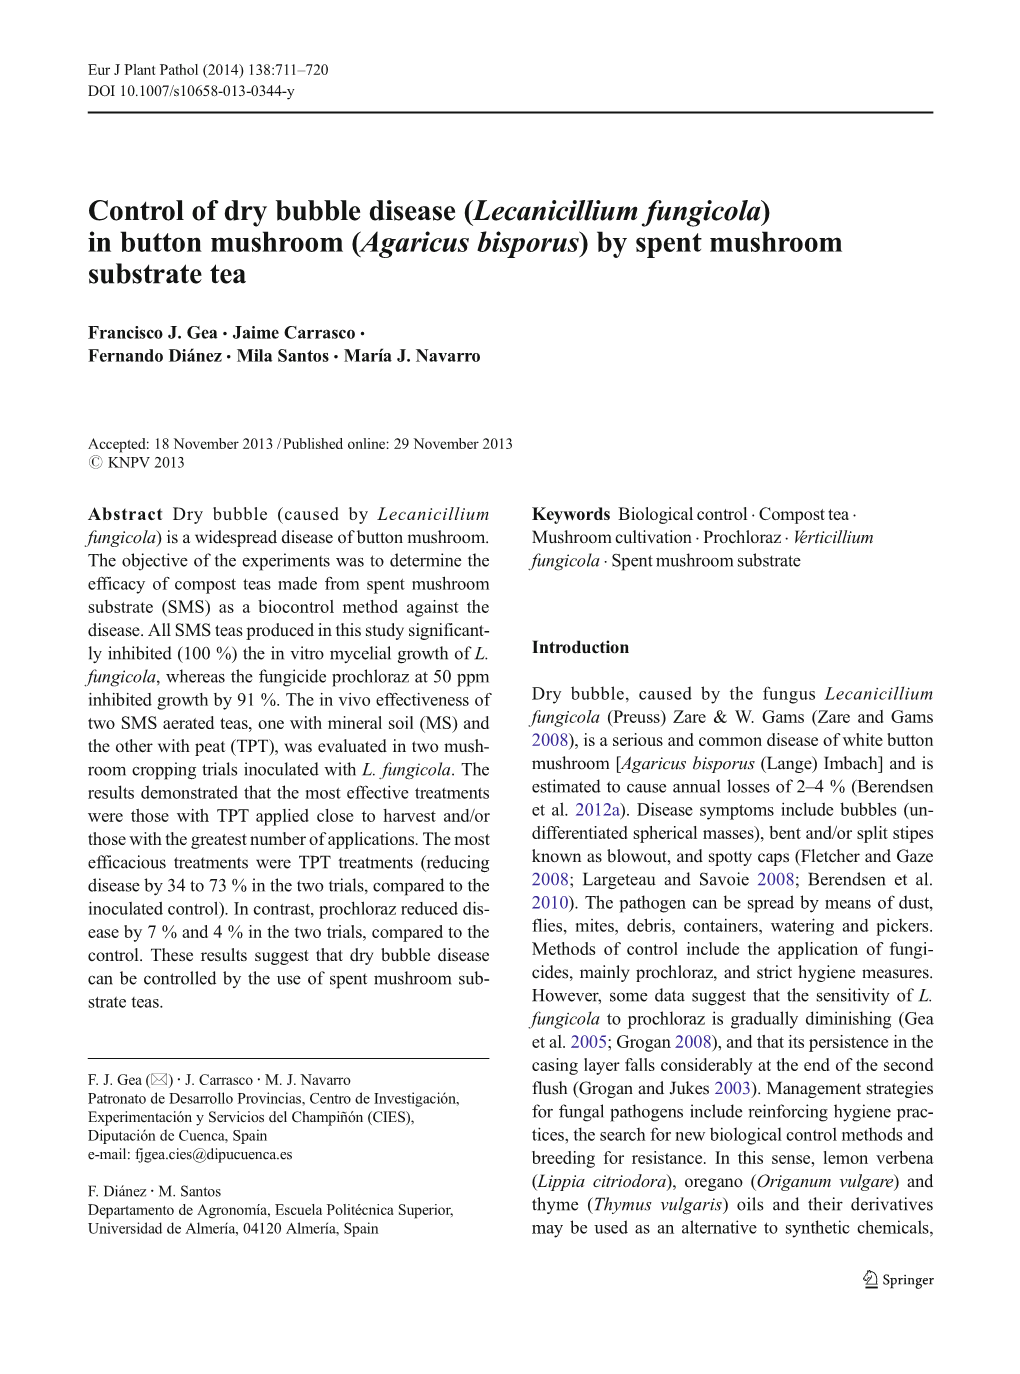 Control of Dry Bubble Disease (Lecanicillium Fungicola) in Button Mushroom (Agaricus Bisporus) by Spent Mushroom Substrate Tea